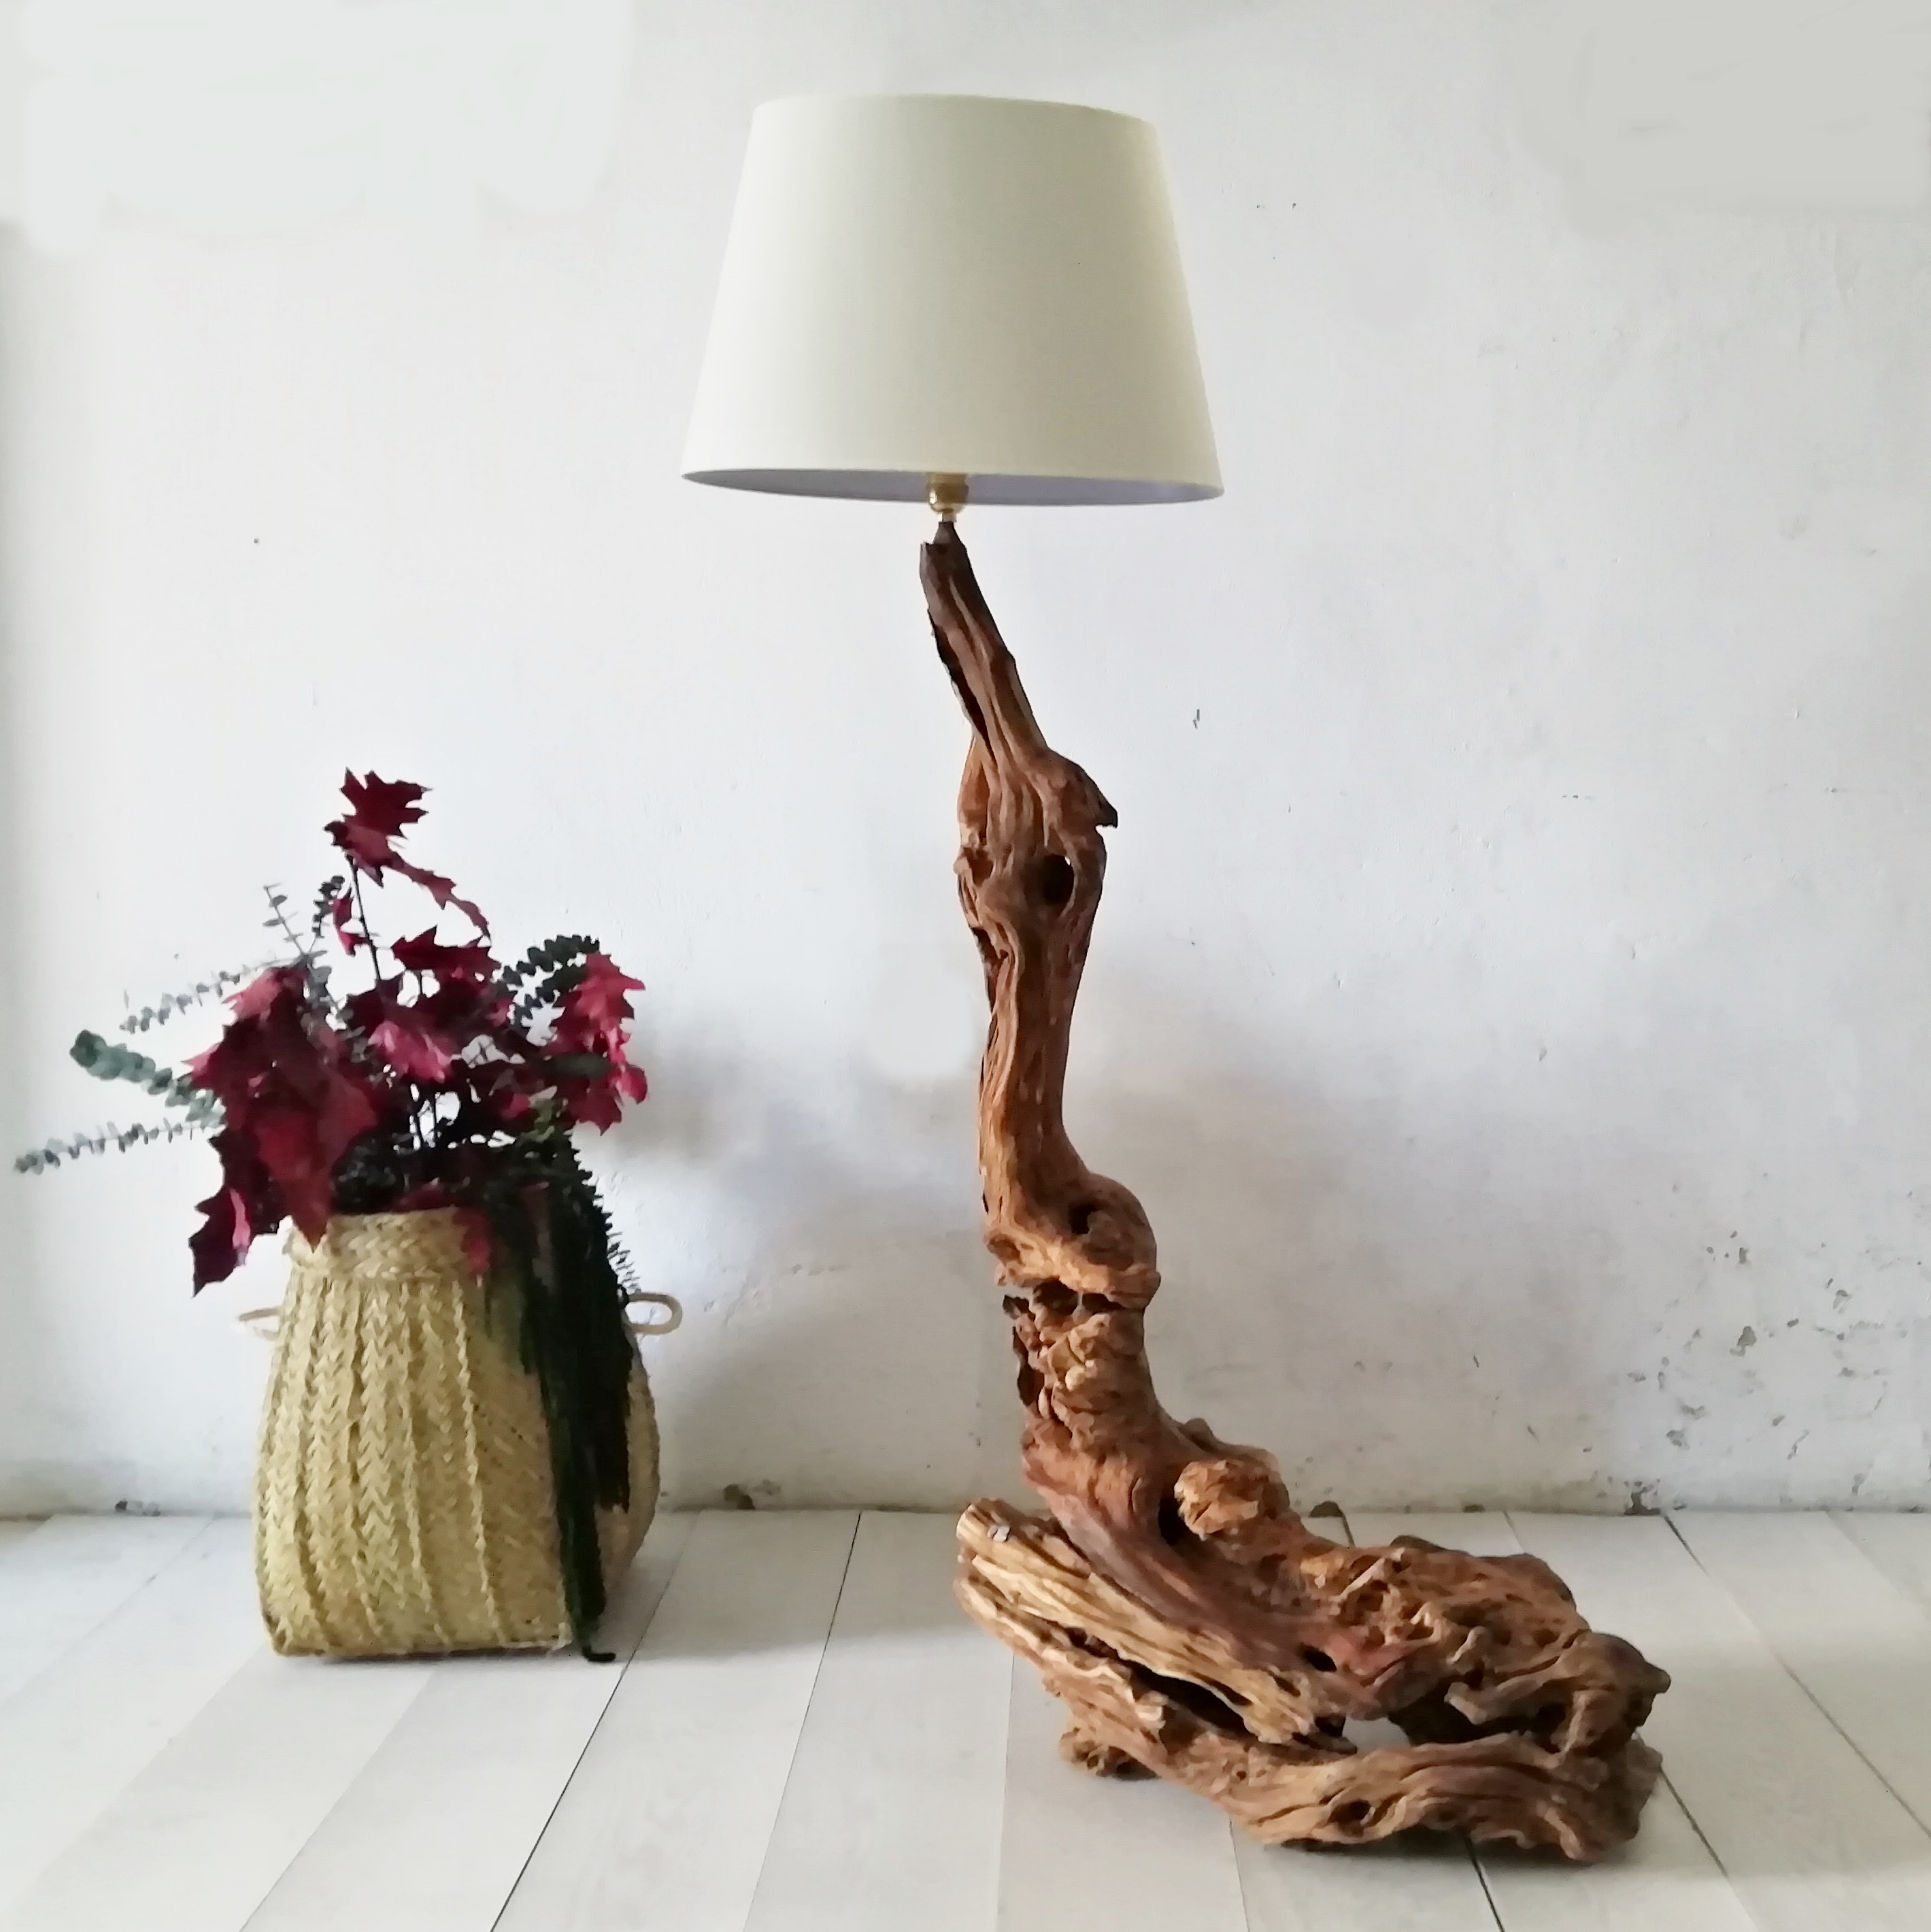 Belicoso Mentalmente violento Belleza natural lámparas artesanales de madera olivo